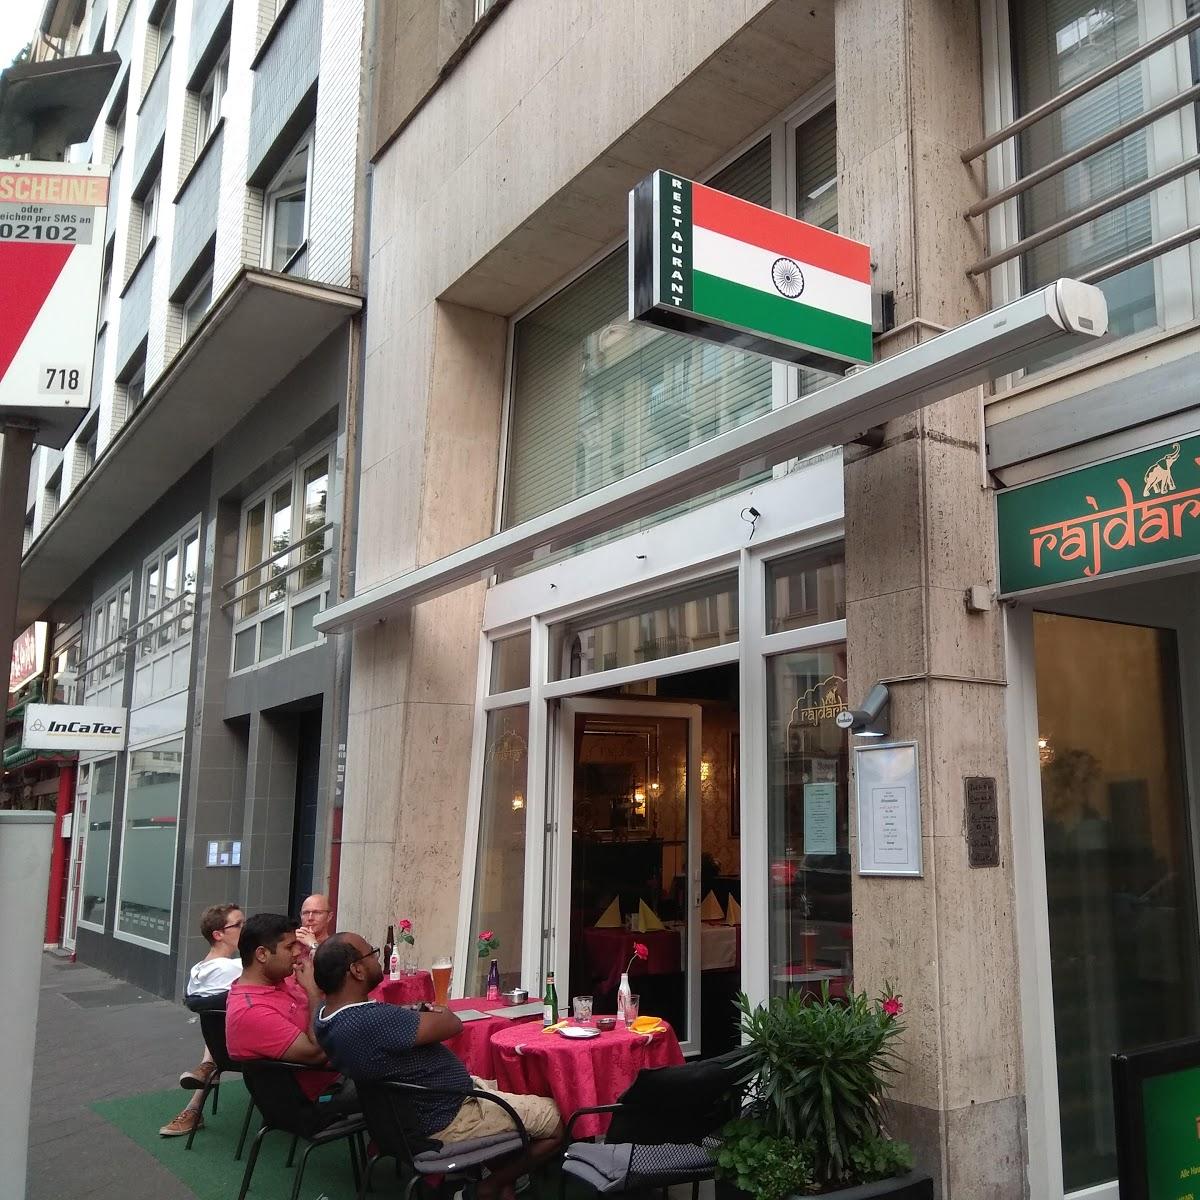 Restaurant "Rajdarbaar Tandoori Indisches Restaurant" in Düsseldorf